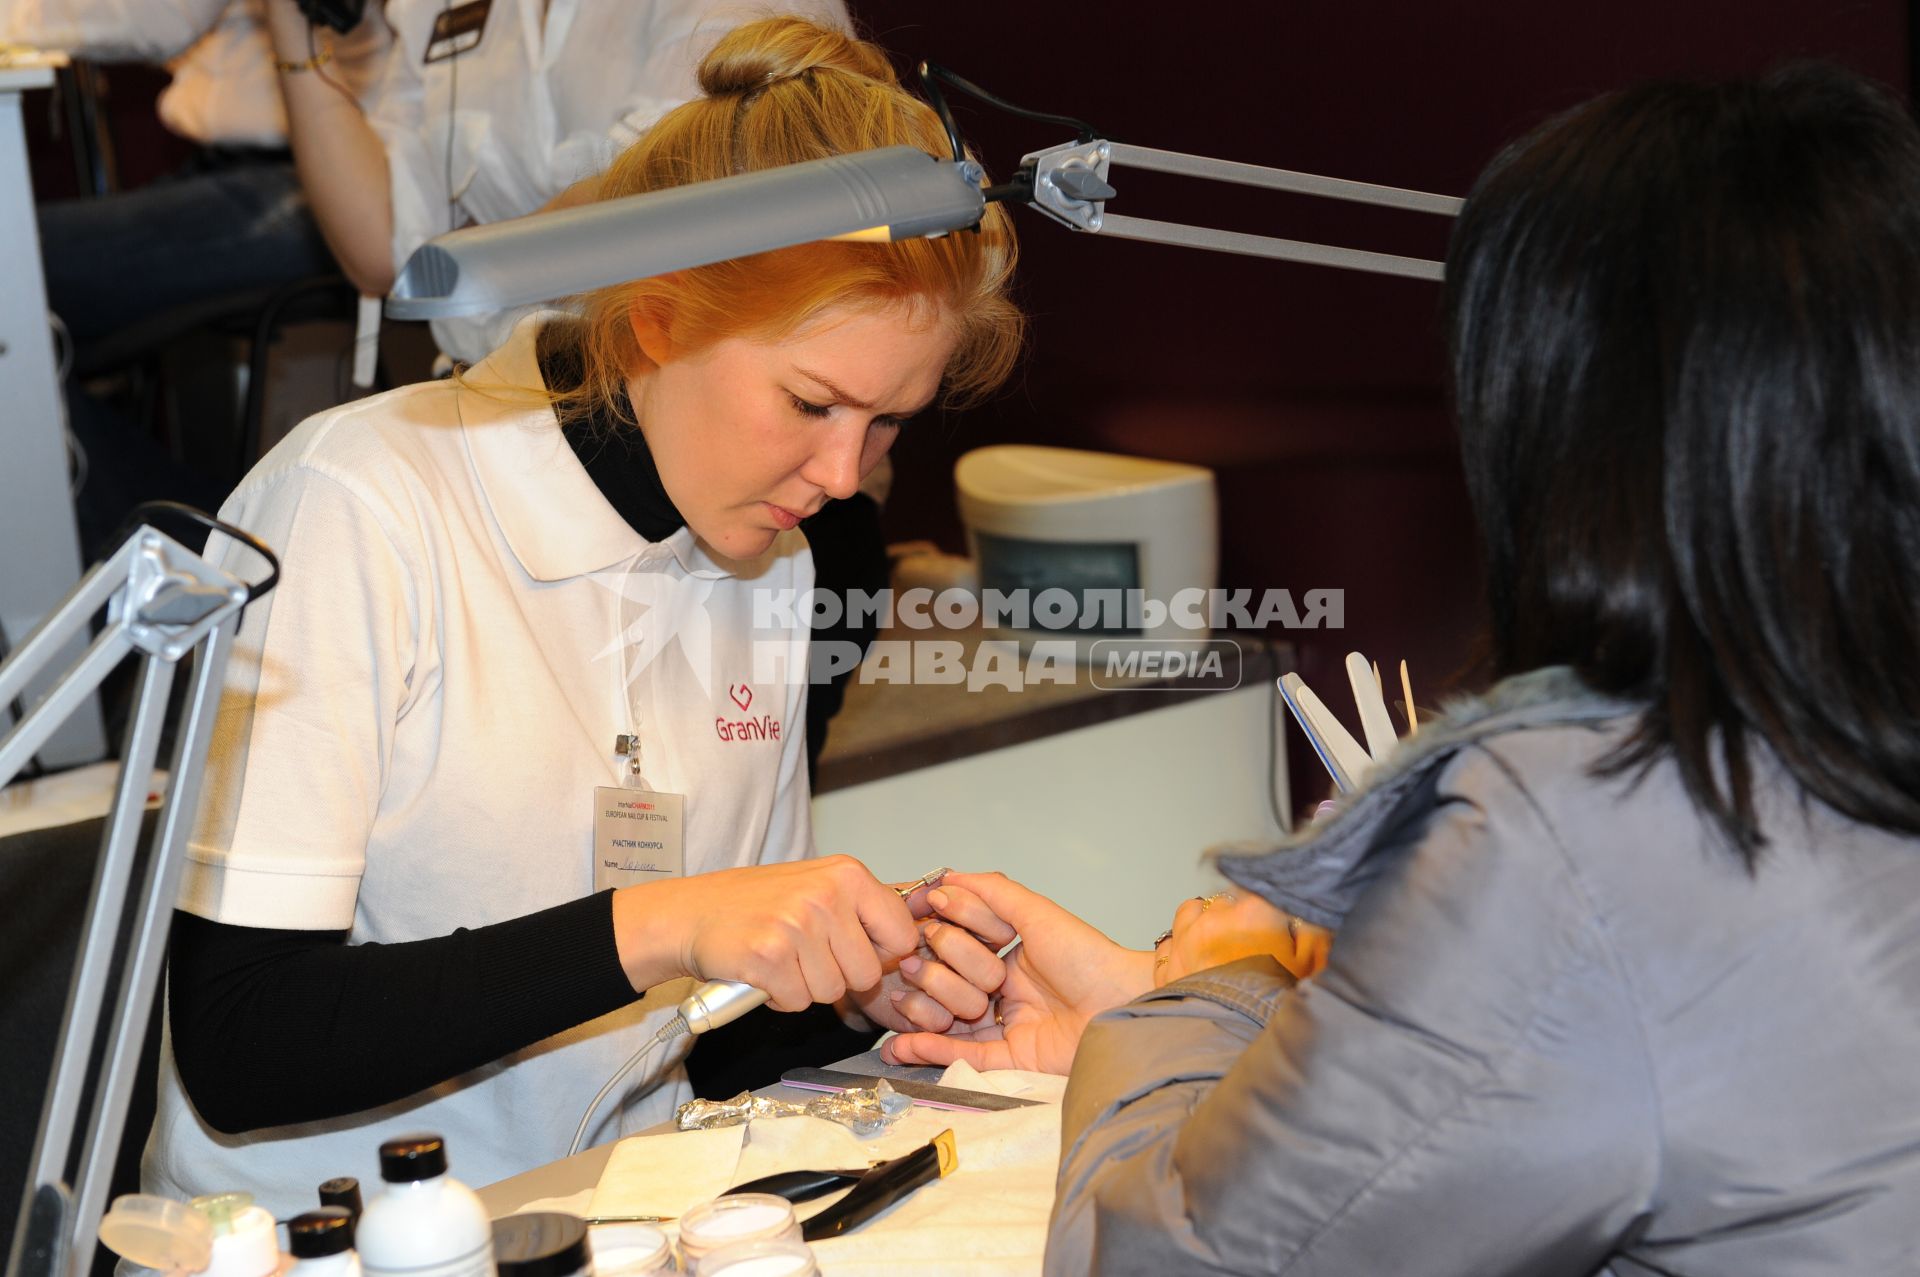 Международная выставка парфюмерии и косметики InterCHARM. На снимке: мастер по ногтевому сервису делает маникюр. 26 октября  2011 года.